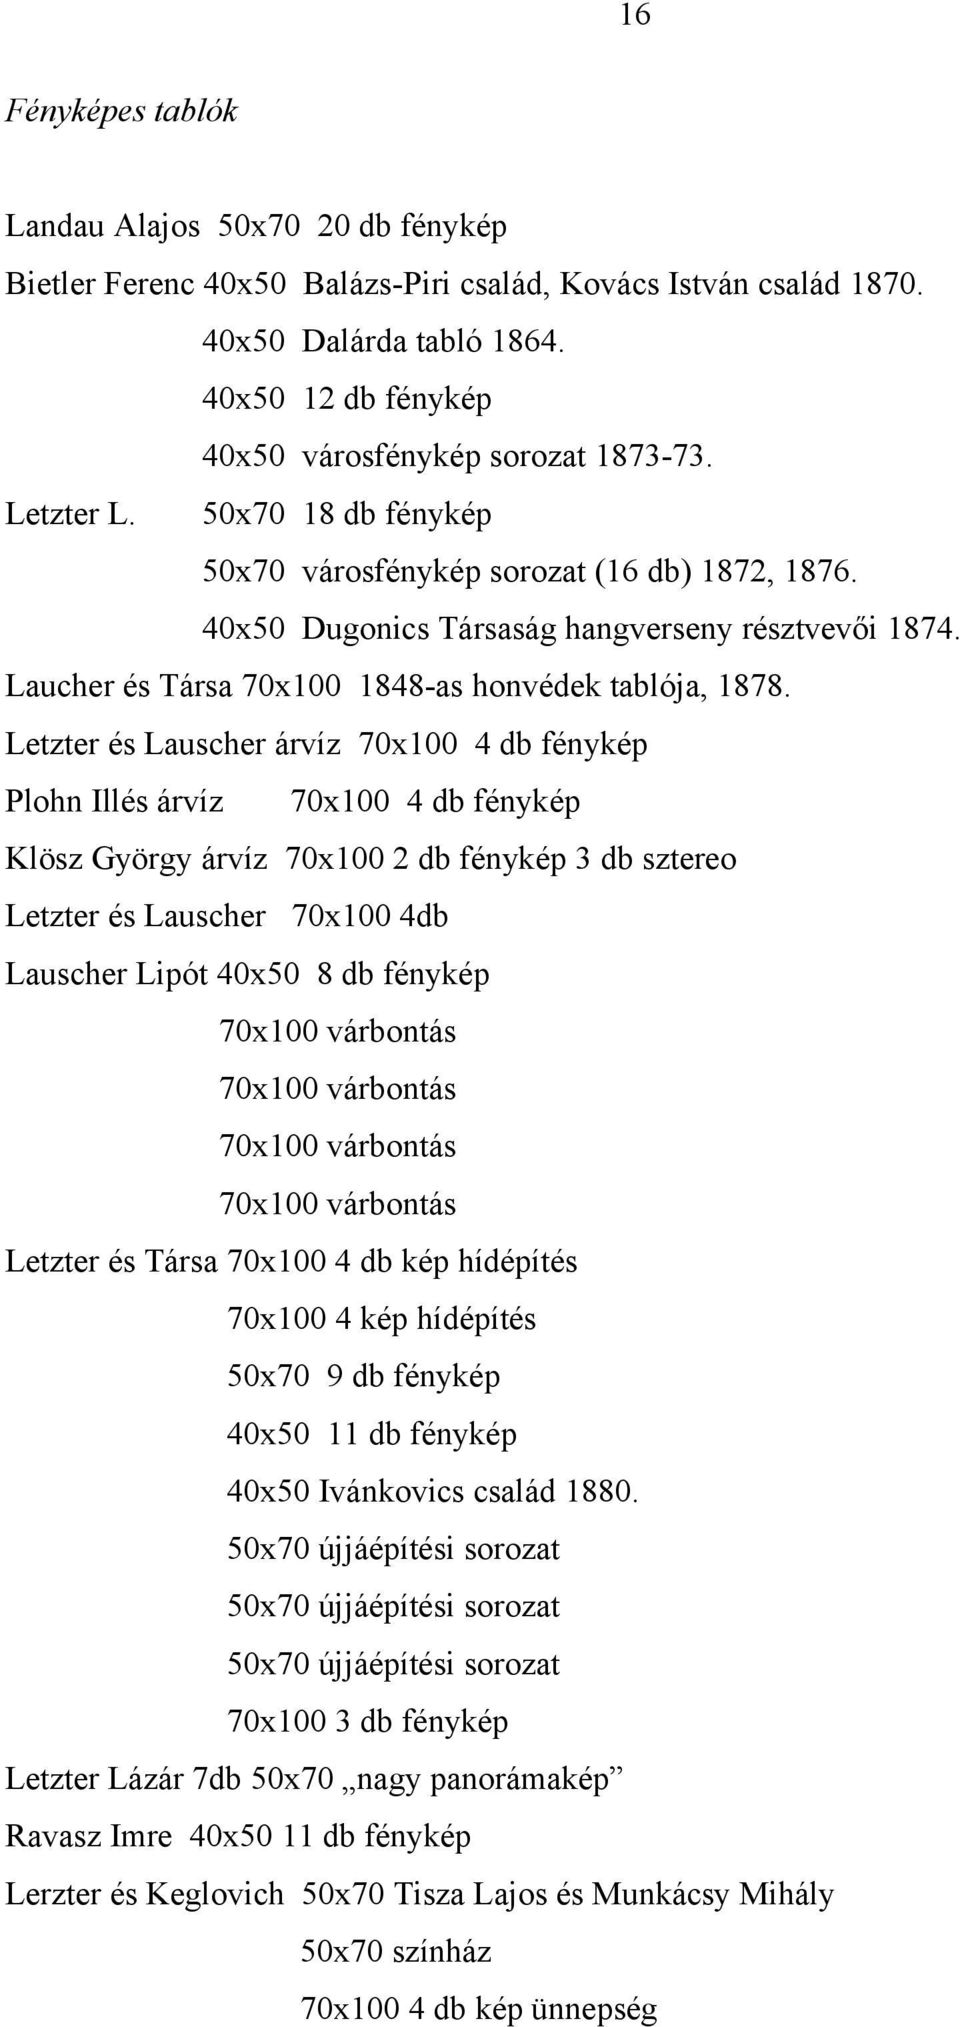 Laucher és Társa 70x100 1848-as honvédek tablója, 1878.